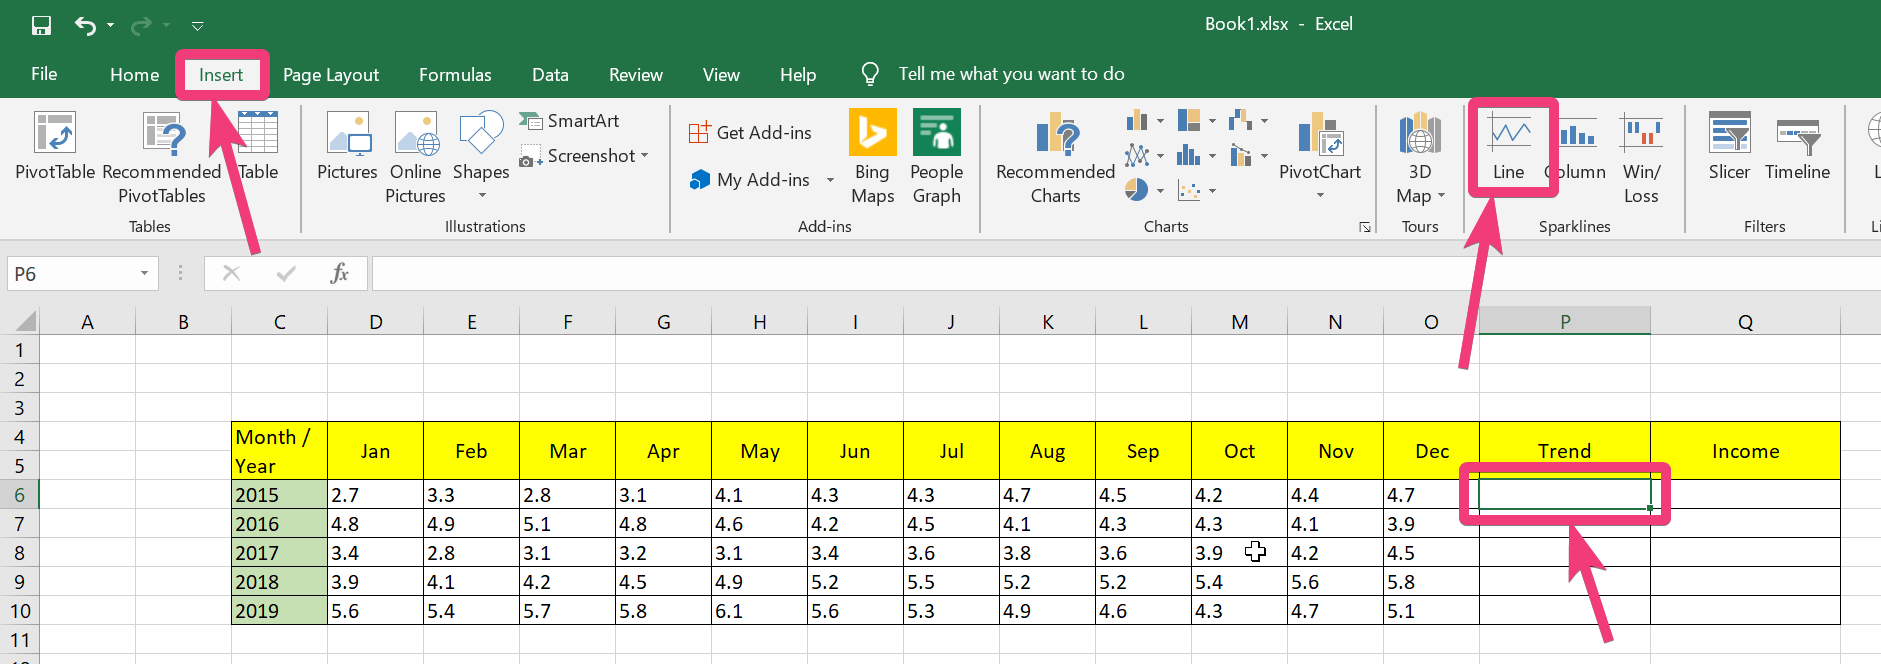 Tändlinjer i Excel och ark 20